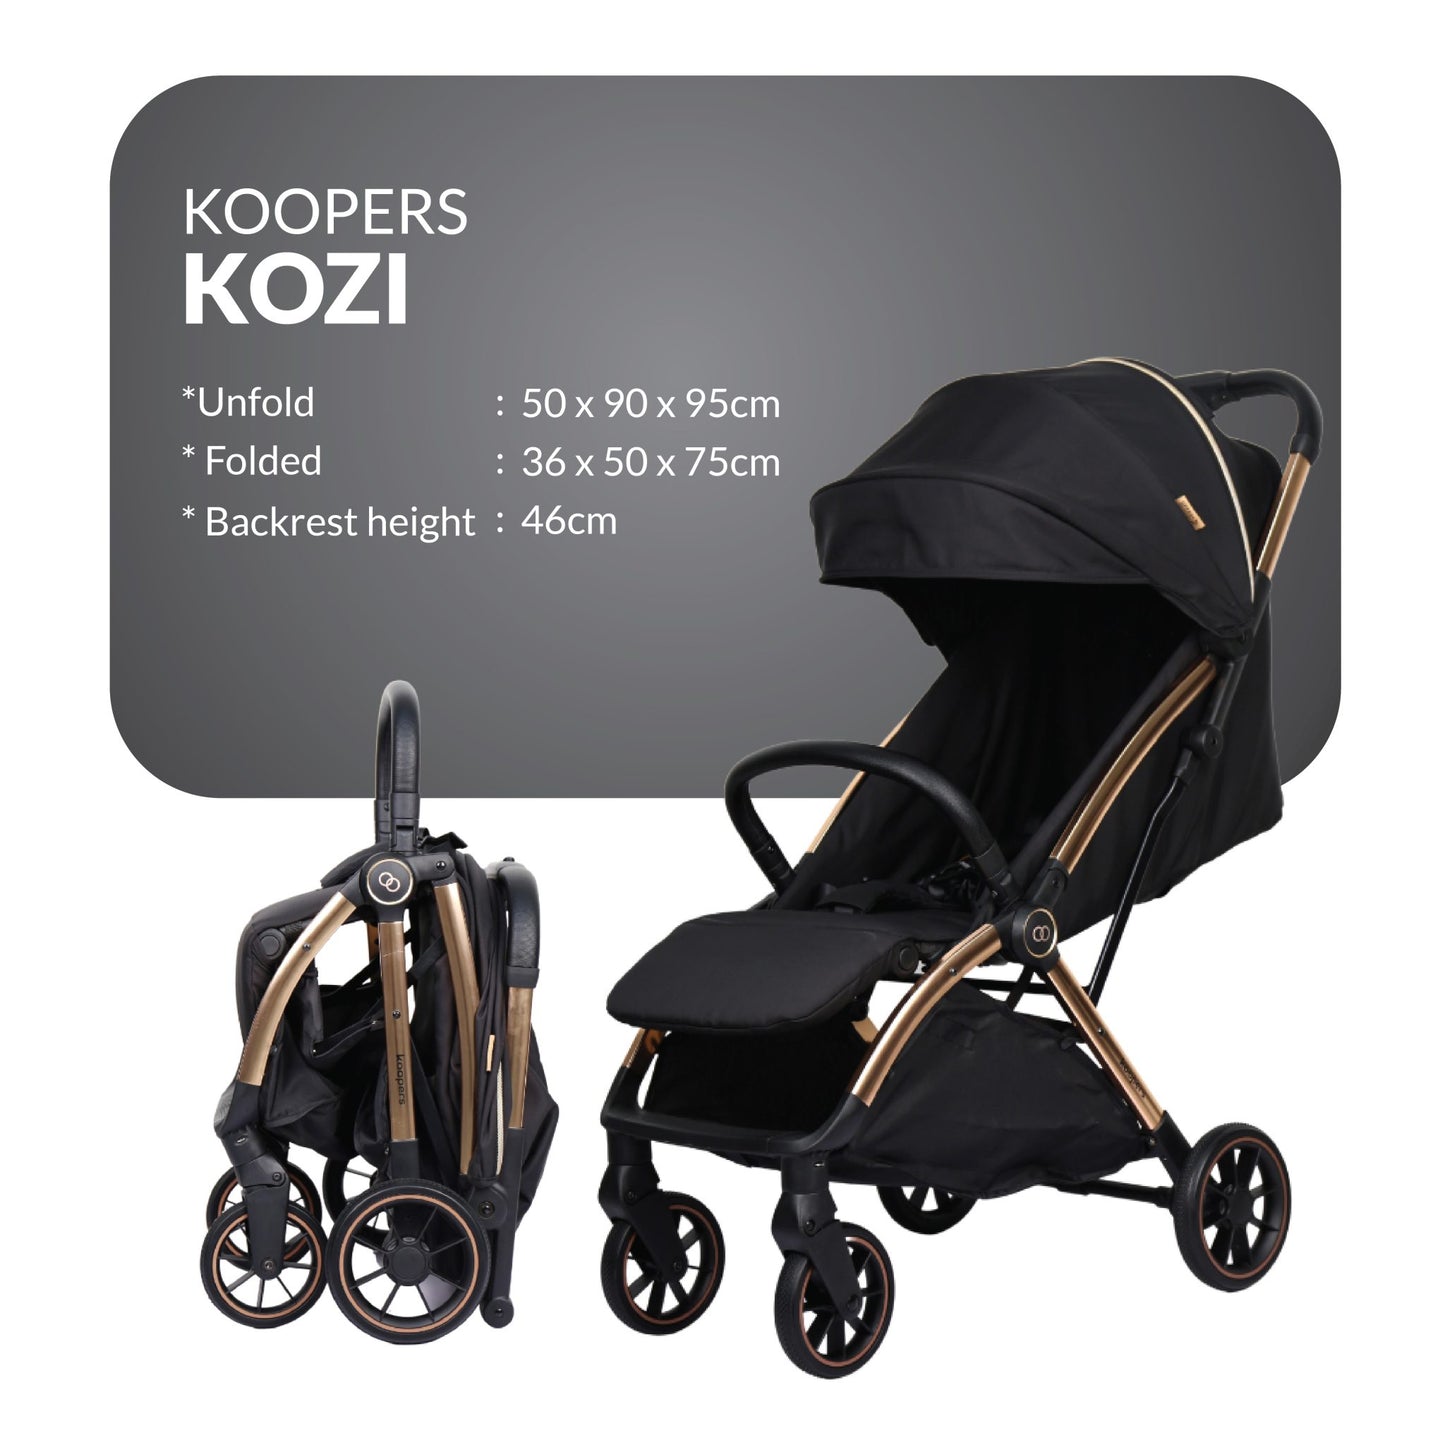 Koopers Kozi Stroller | EN1888 Approved